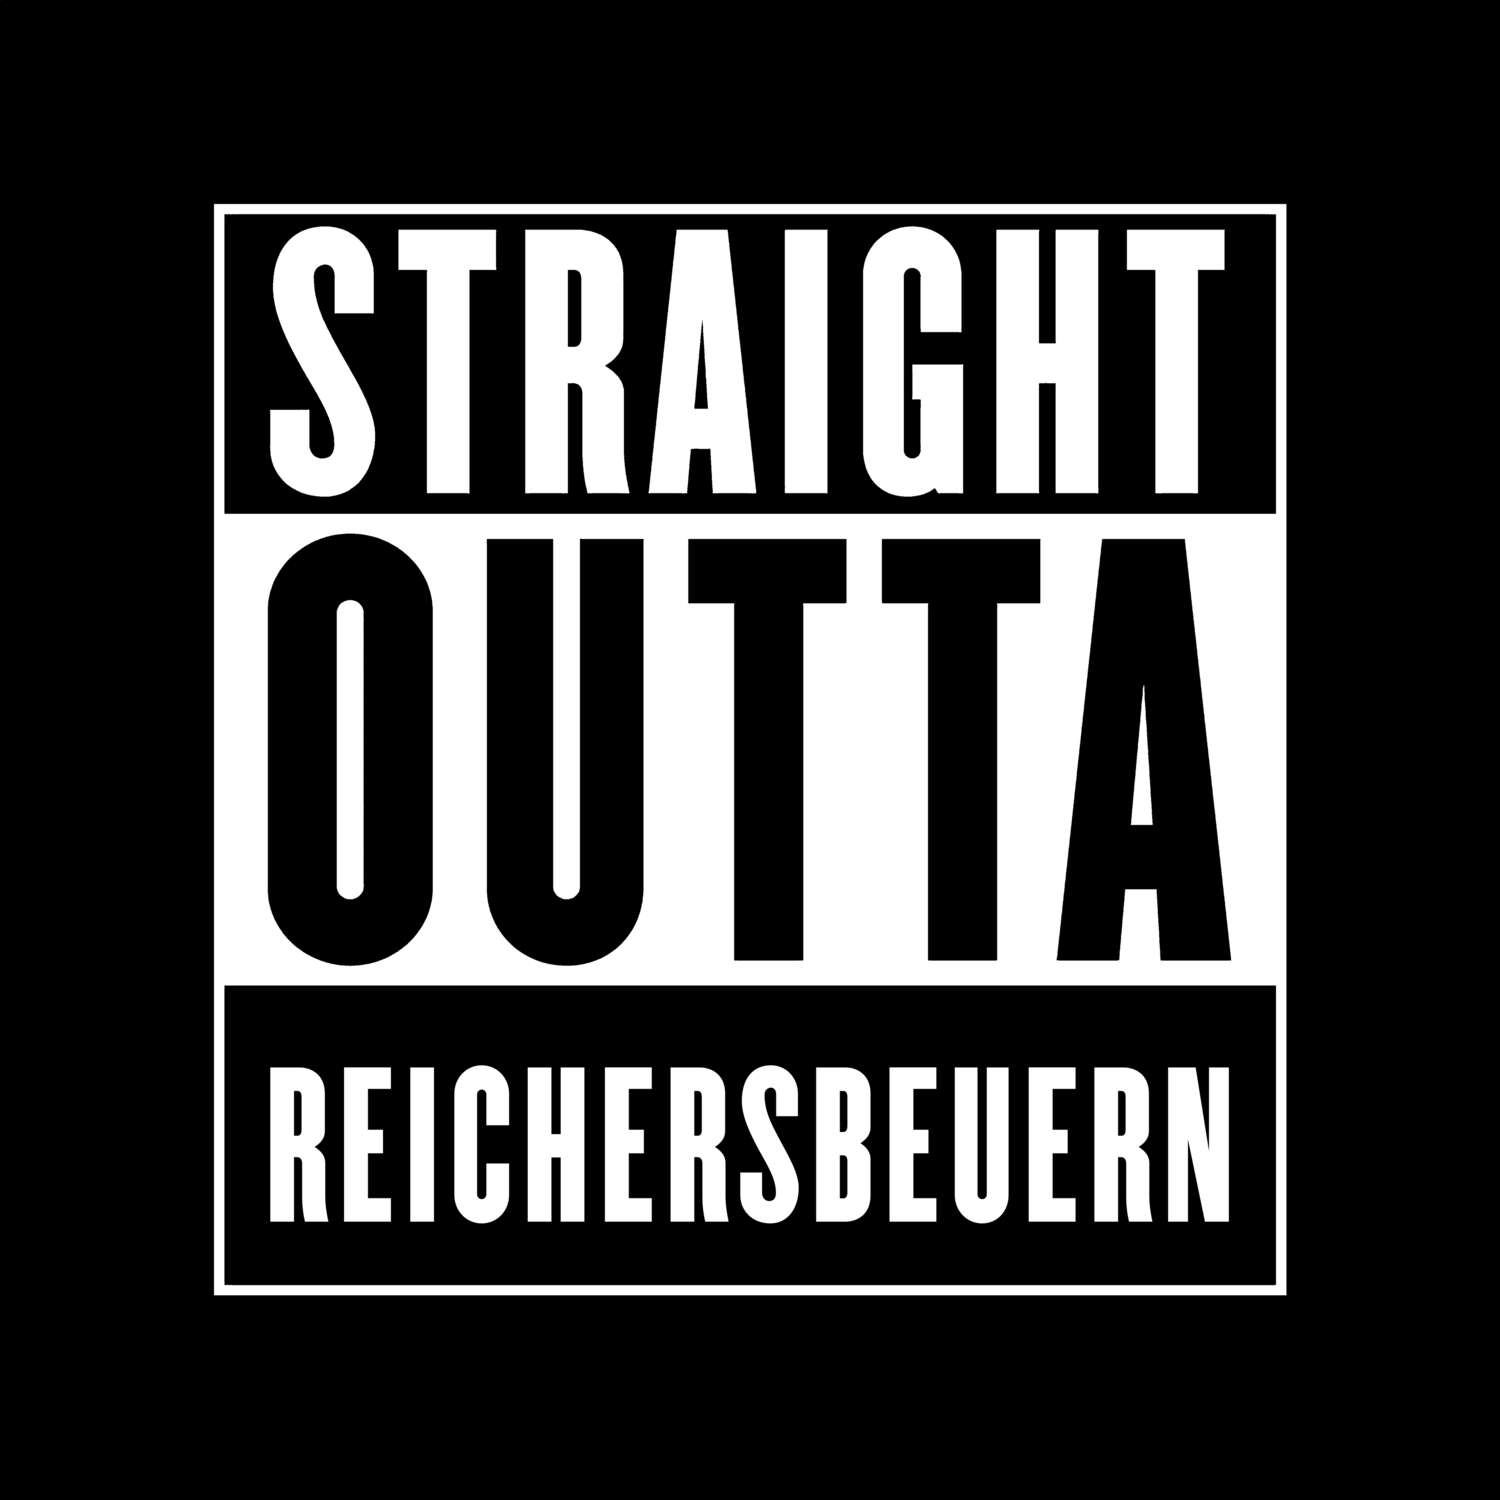 Reichersbeuern T-Shirt »Straight Outta«